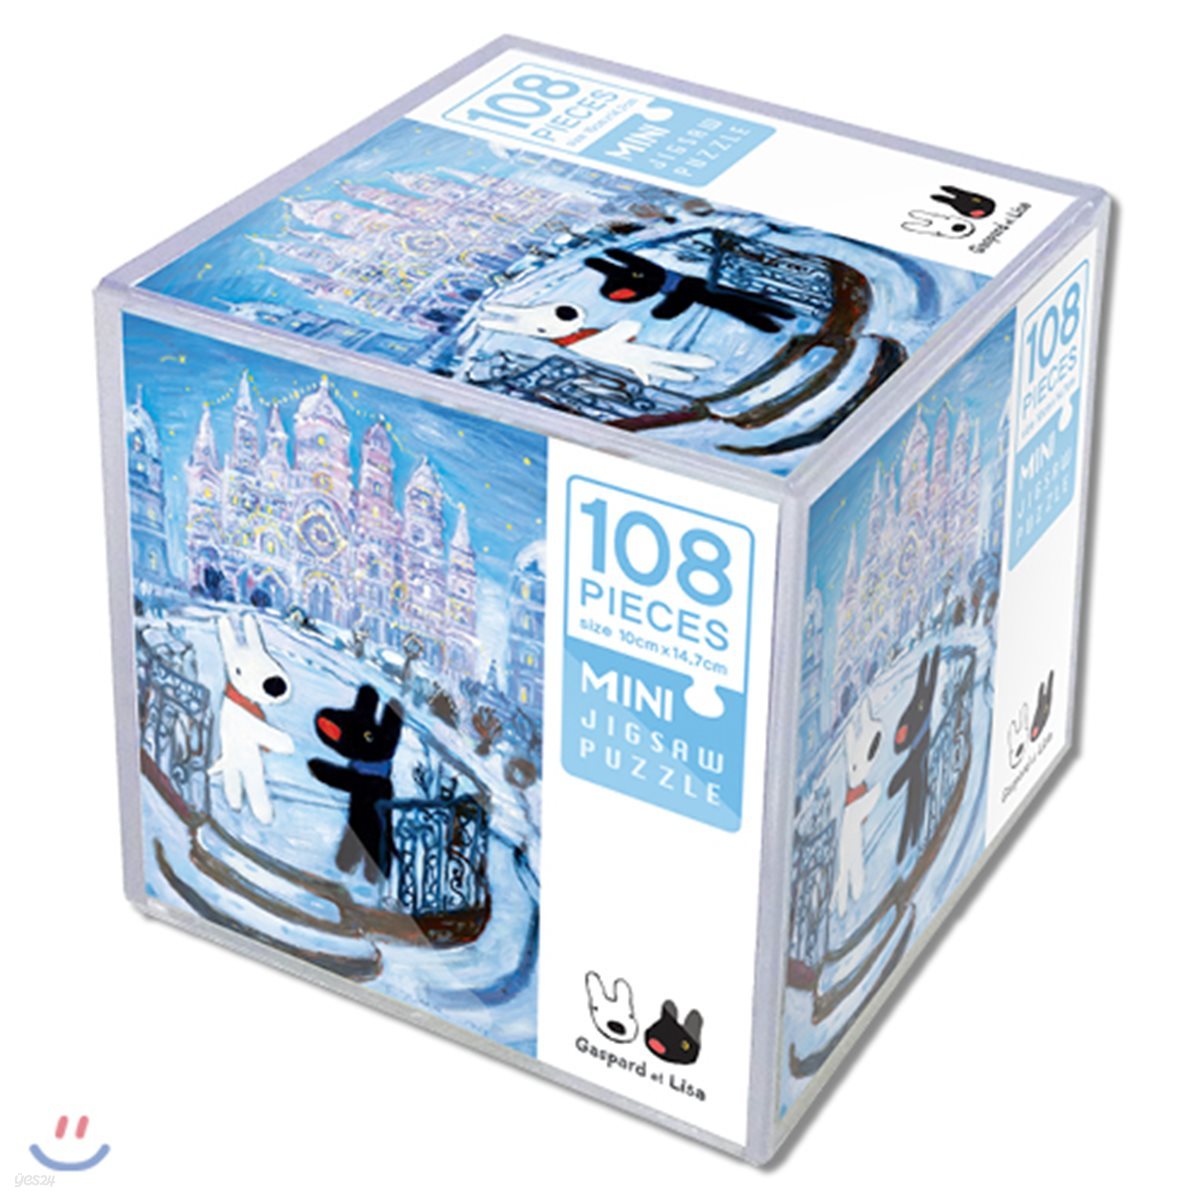 가스파드와 리사 미니 직소 퍼즐 108조각 : 얼음성